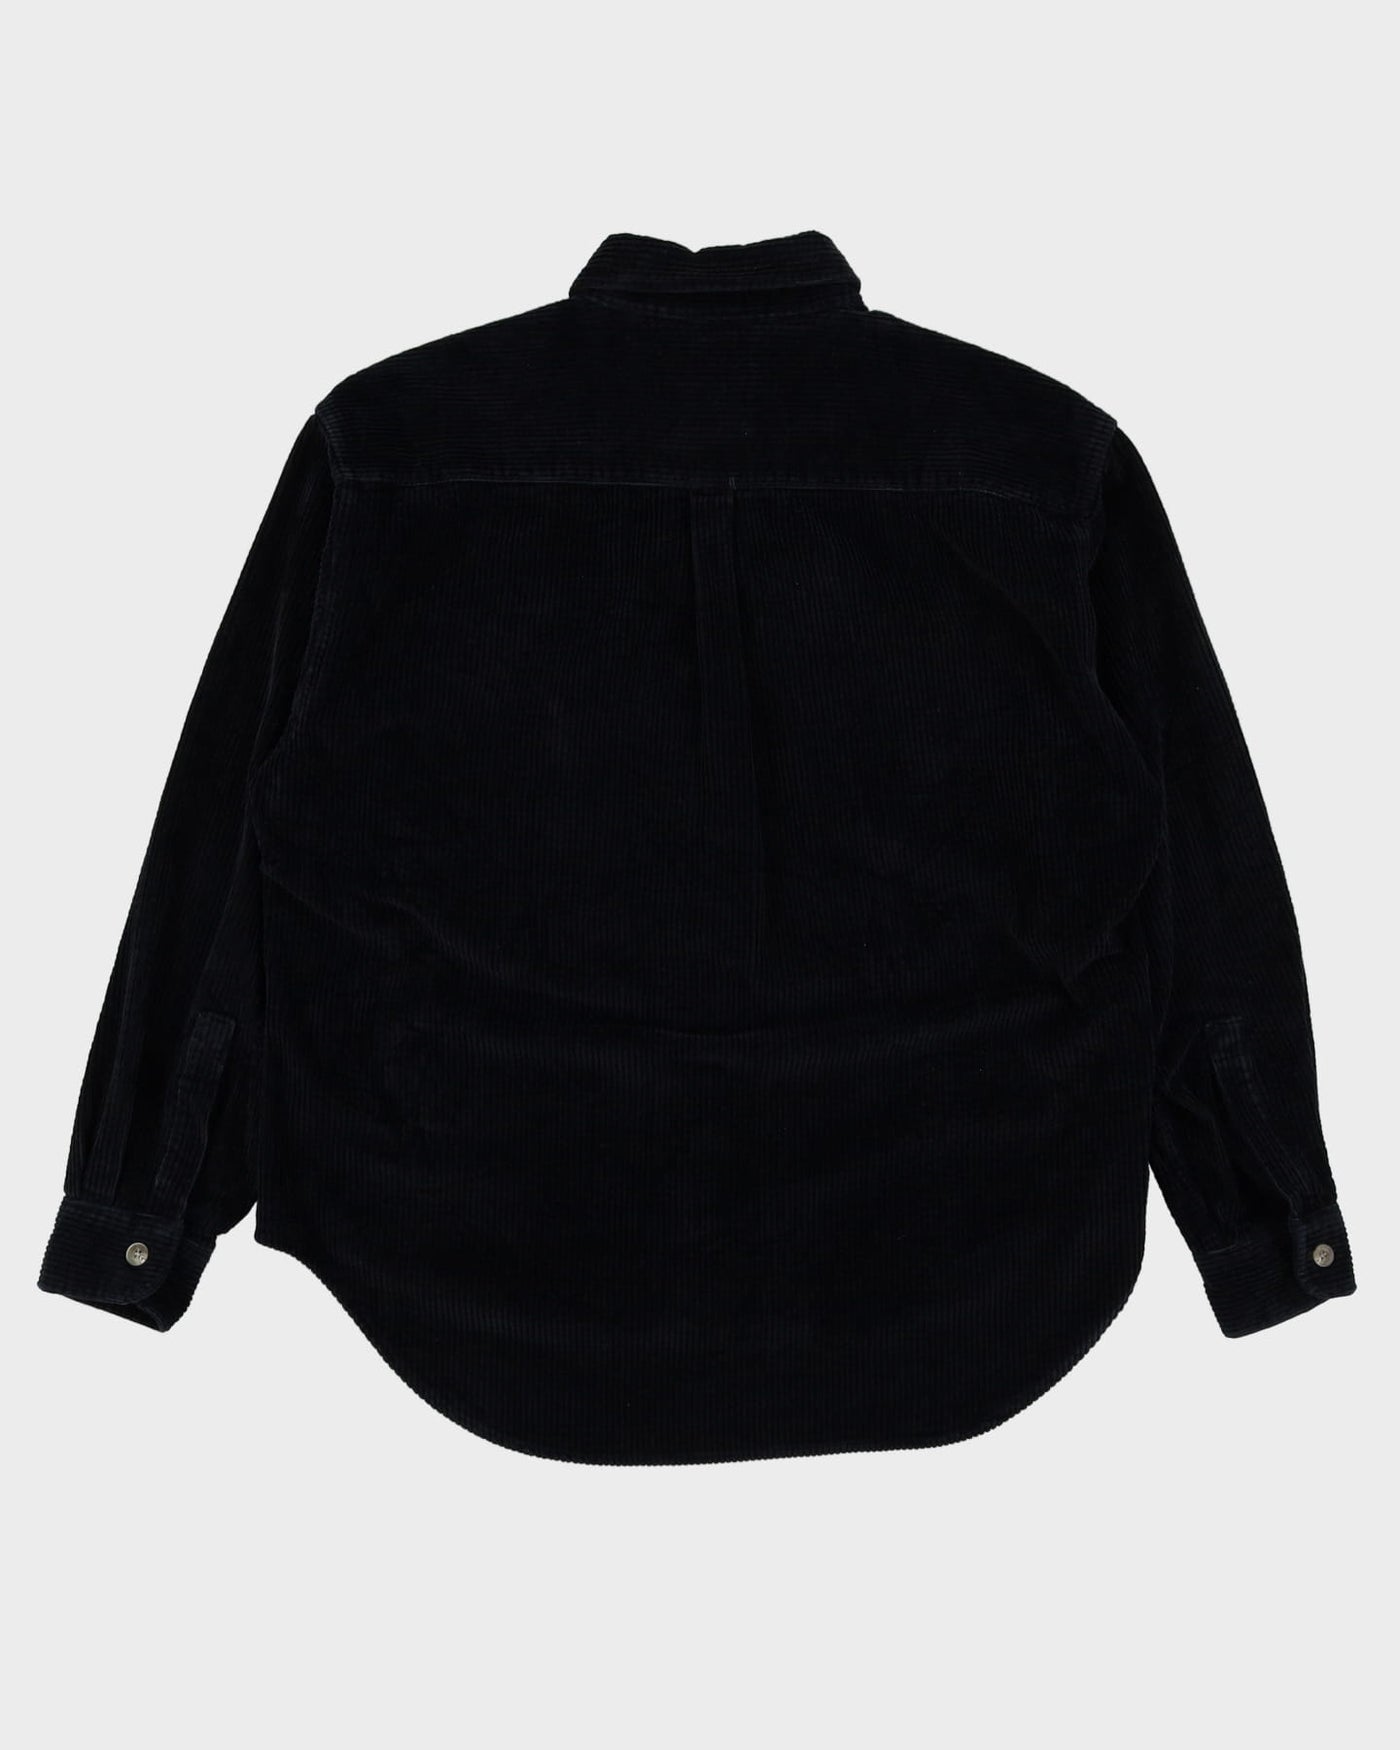 Levi's Black Cord Shirt - XL